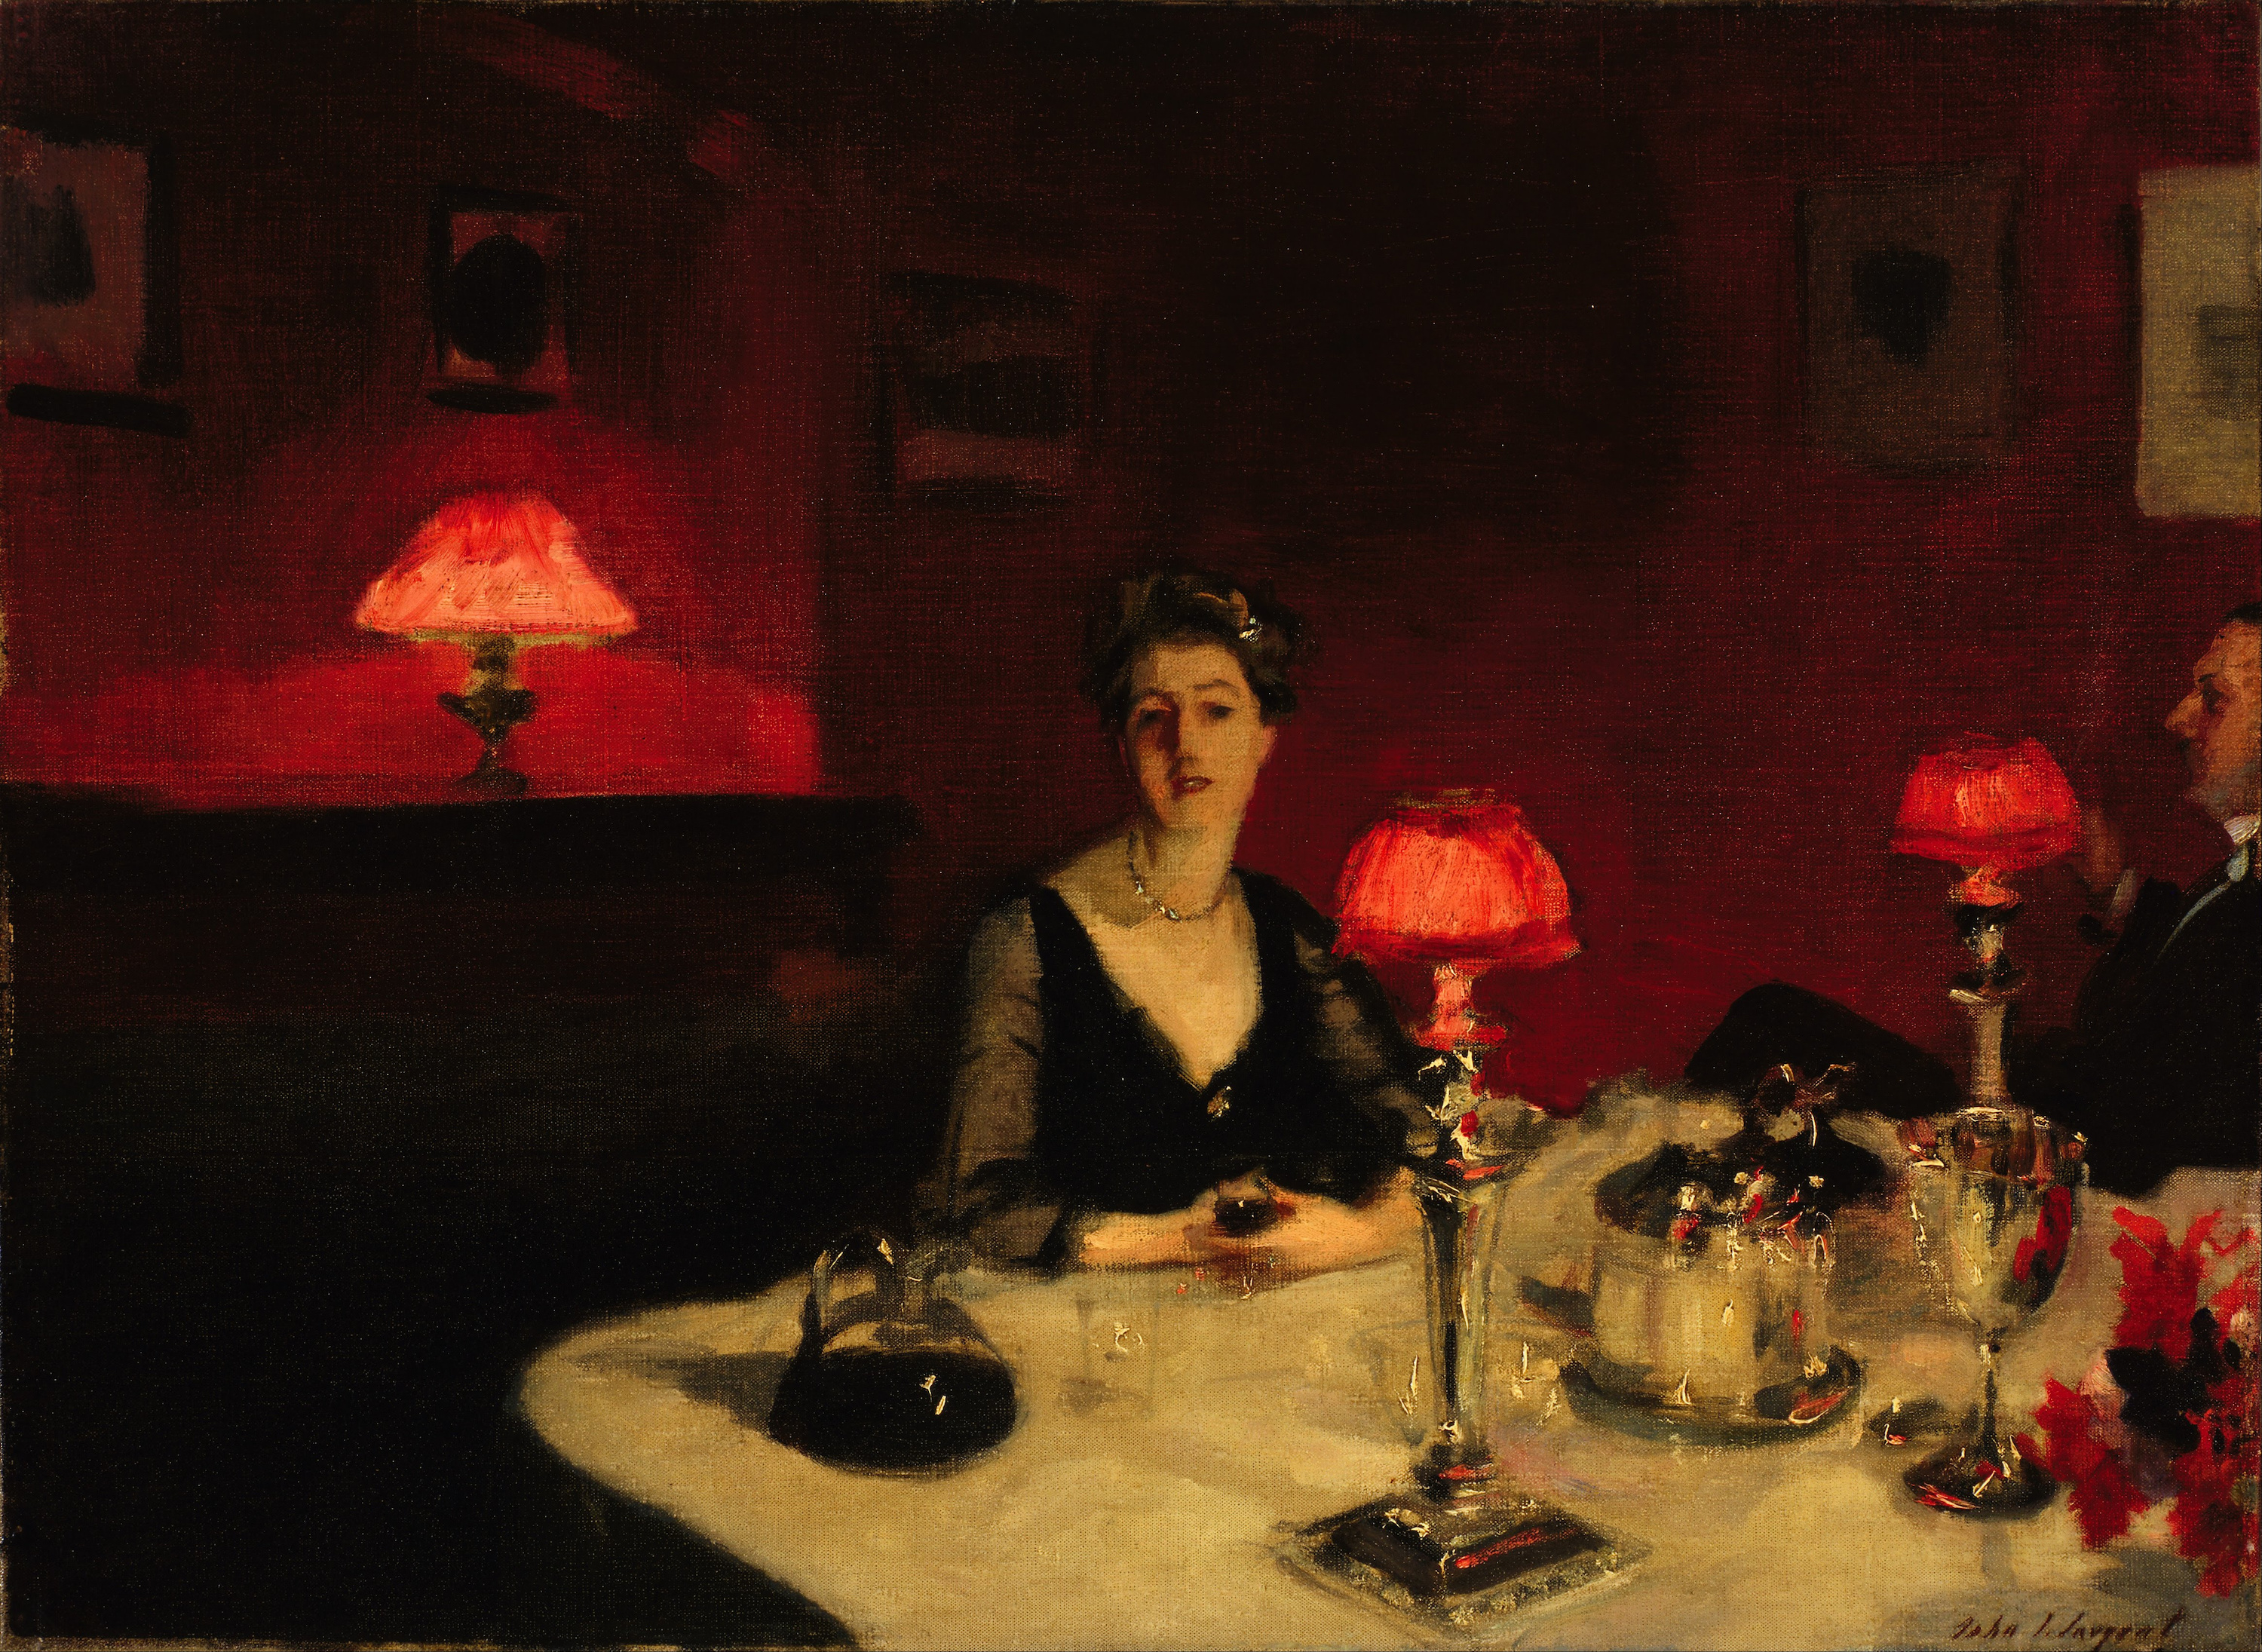 Le verre de porto (Een eettafel in de avond) by John Singer Sargent - 1884 - 51.4 x 66.7 cm 